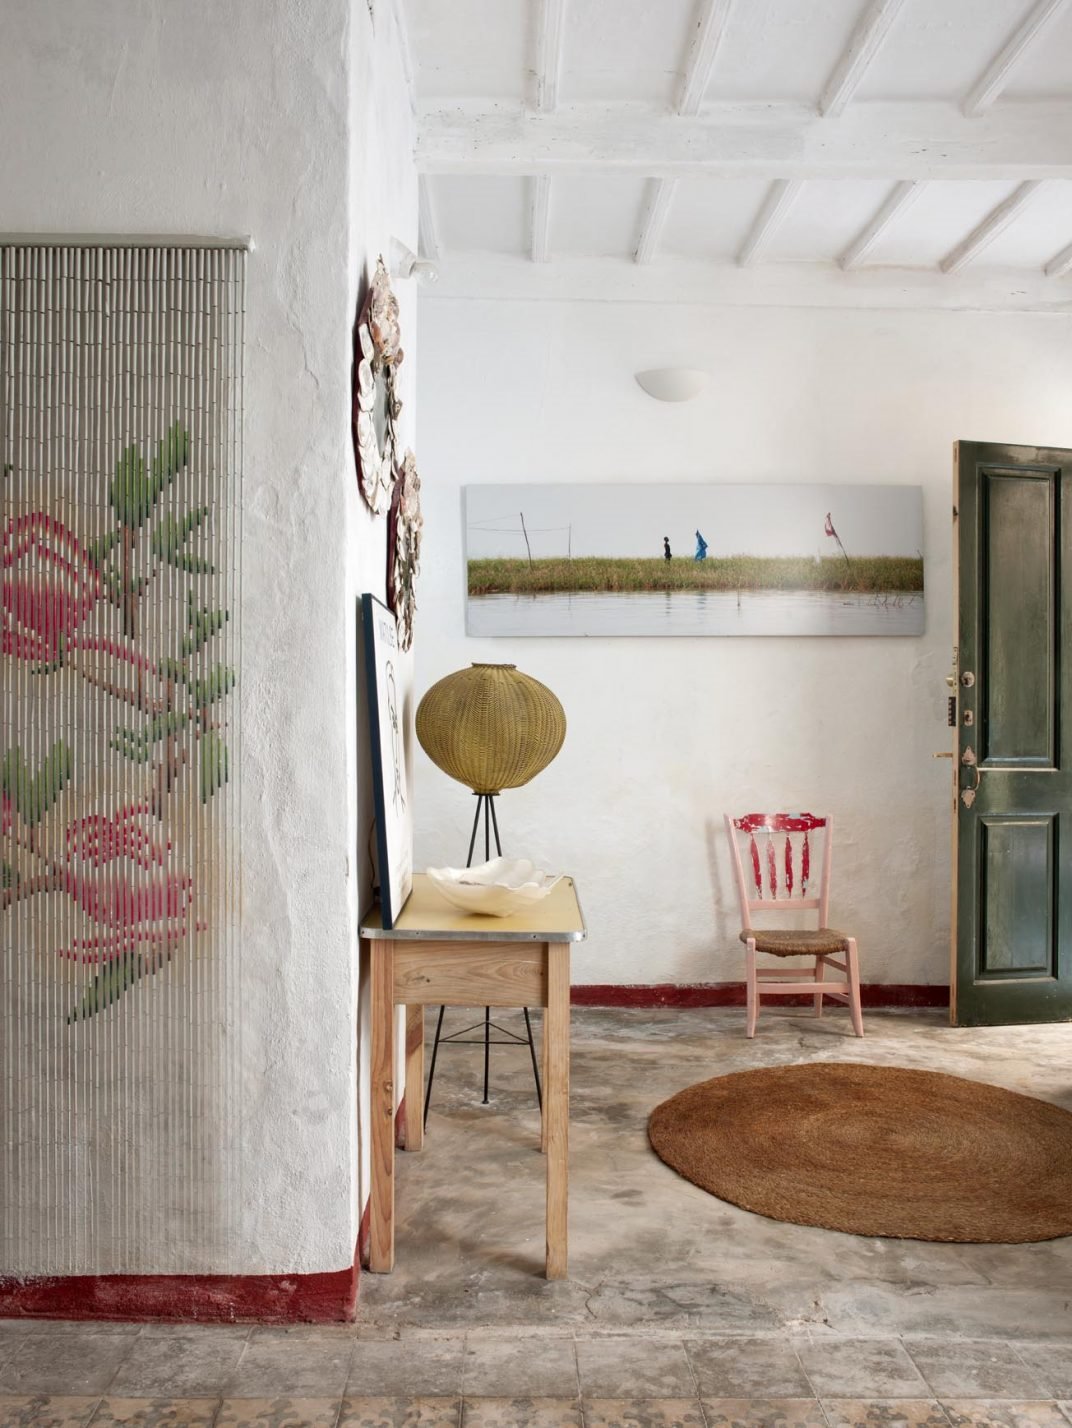 "No tengo estilo, me adapto a cada espacio", María Lladó, interiorista. 